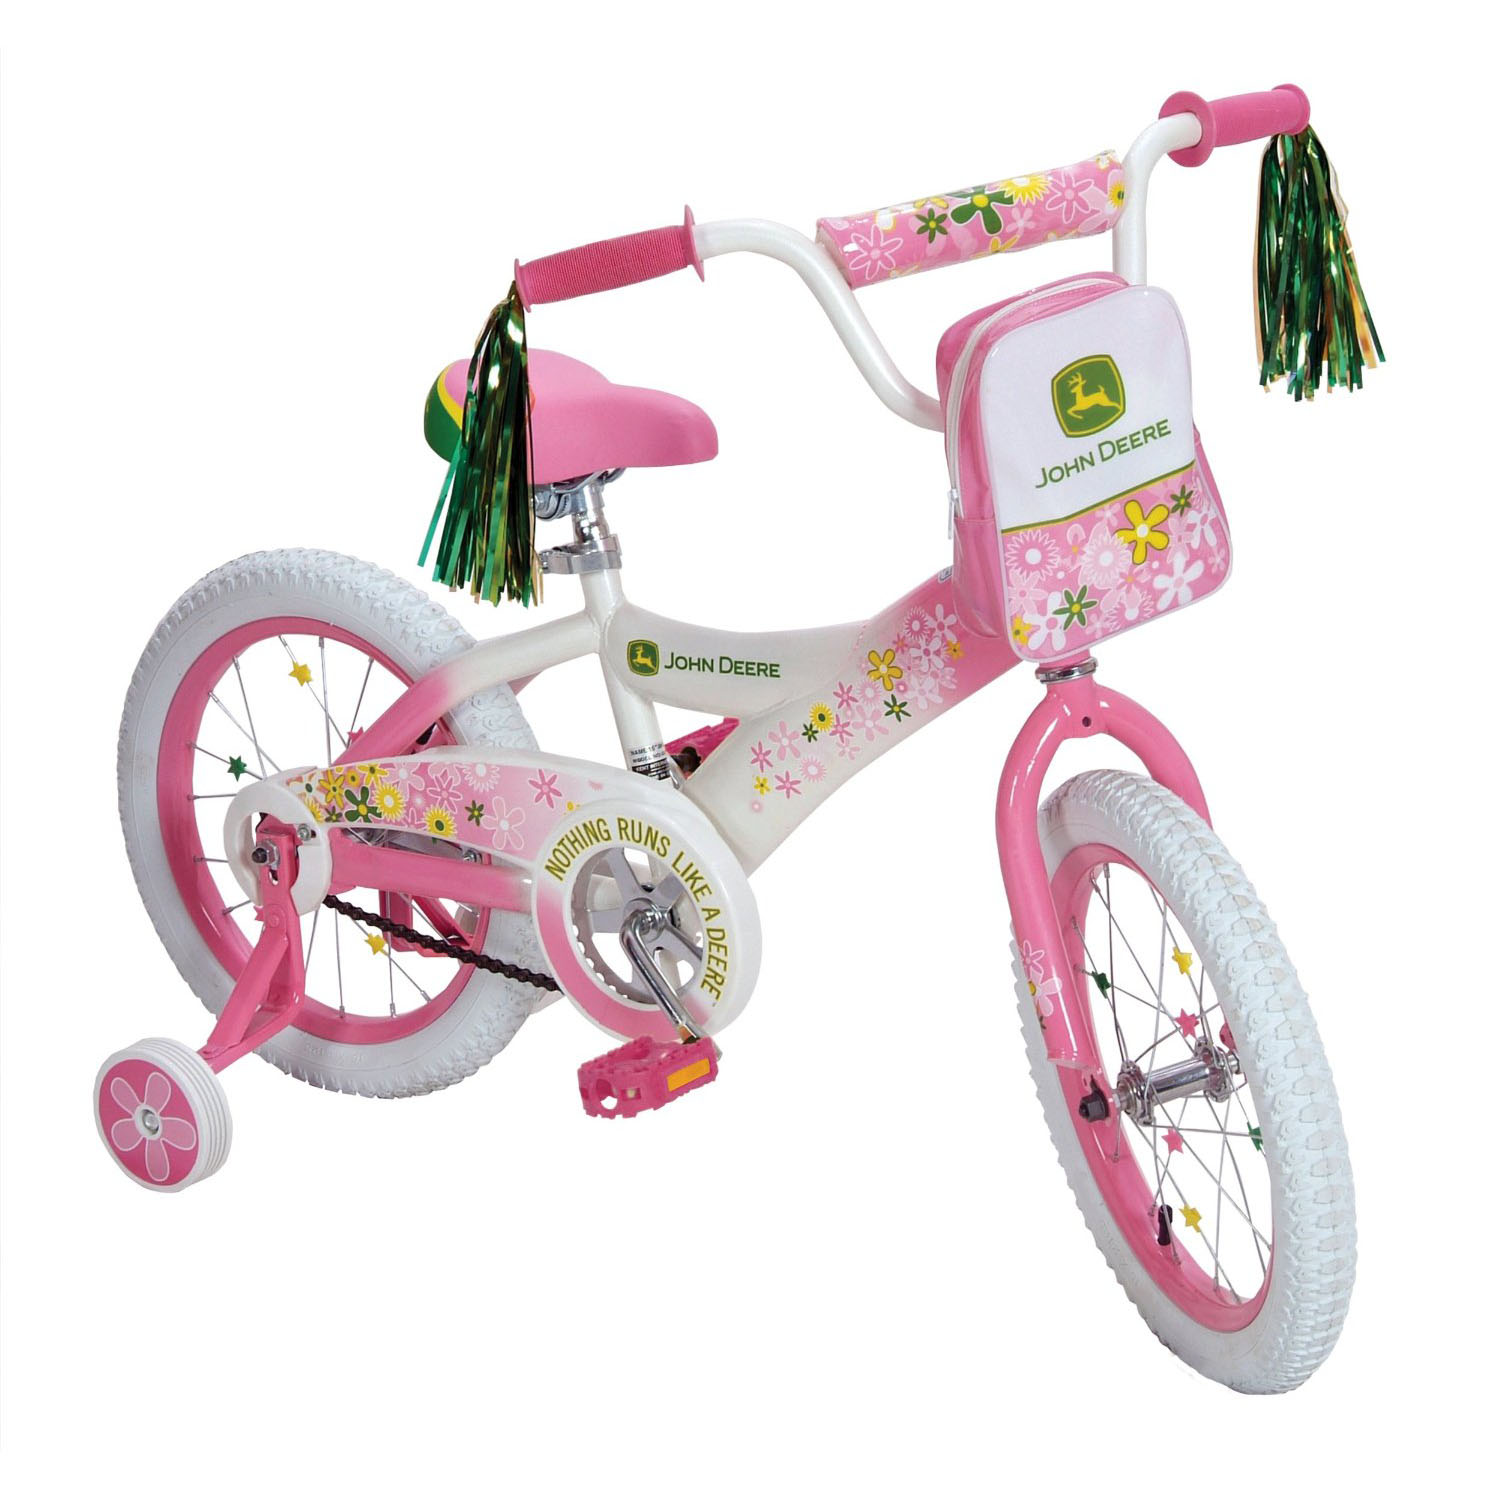 John Deere Toys - Girls Bike - Pink at ToyStop